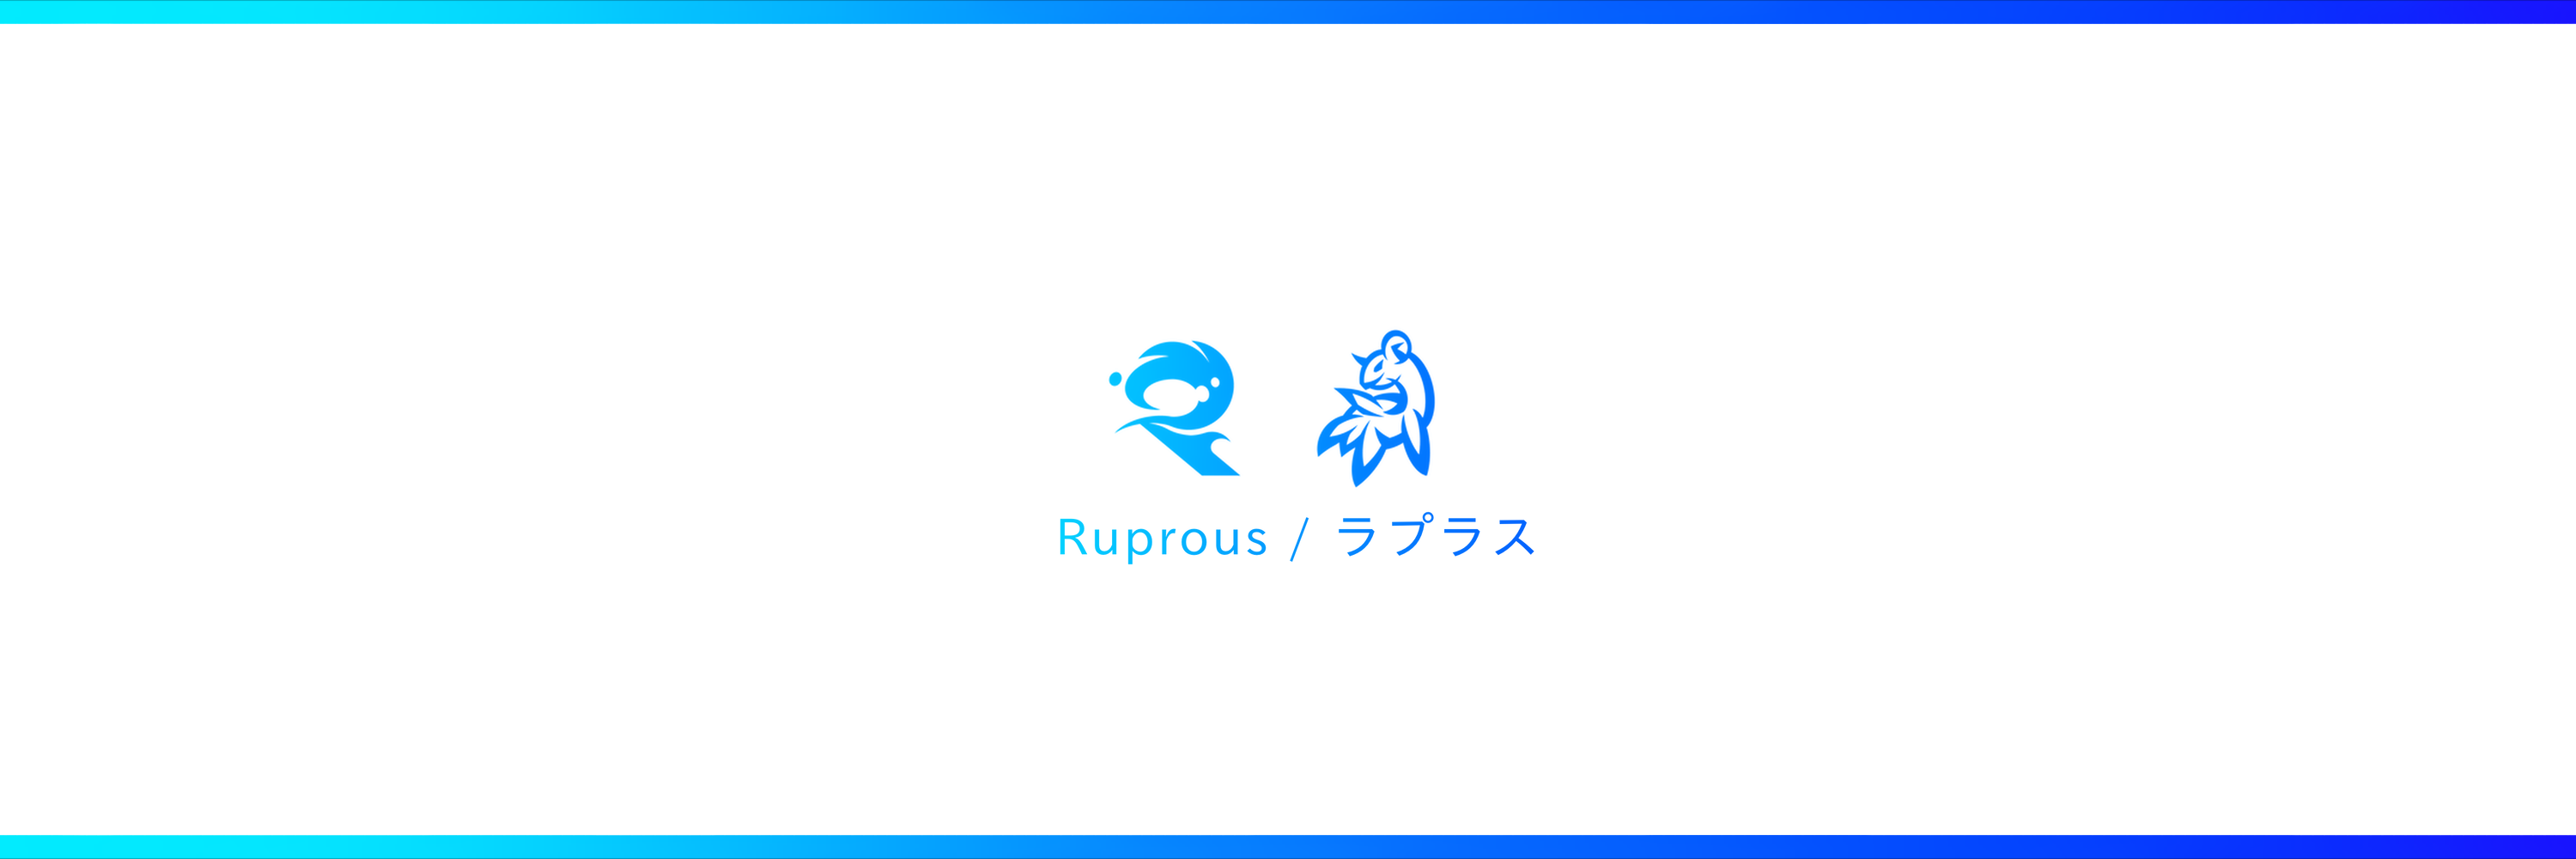 Ruprous Studio